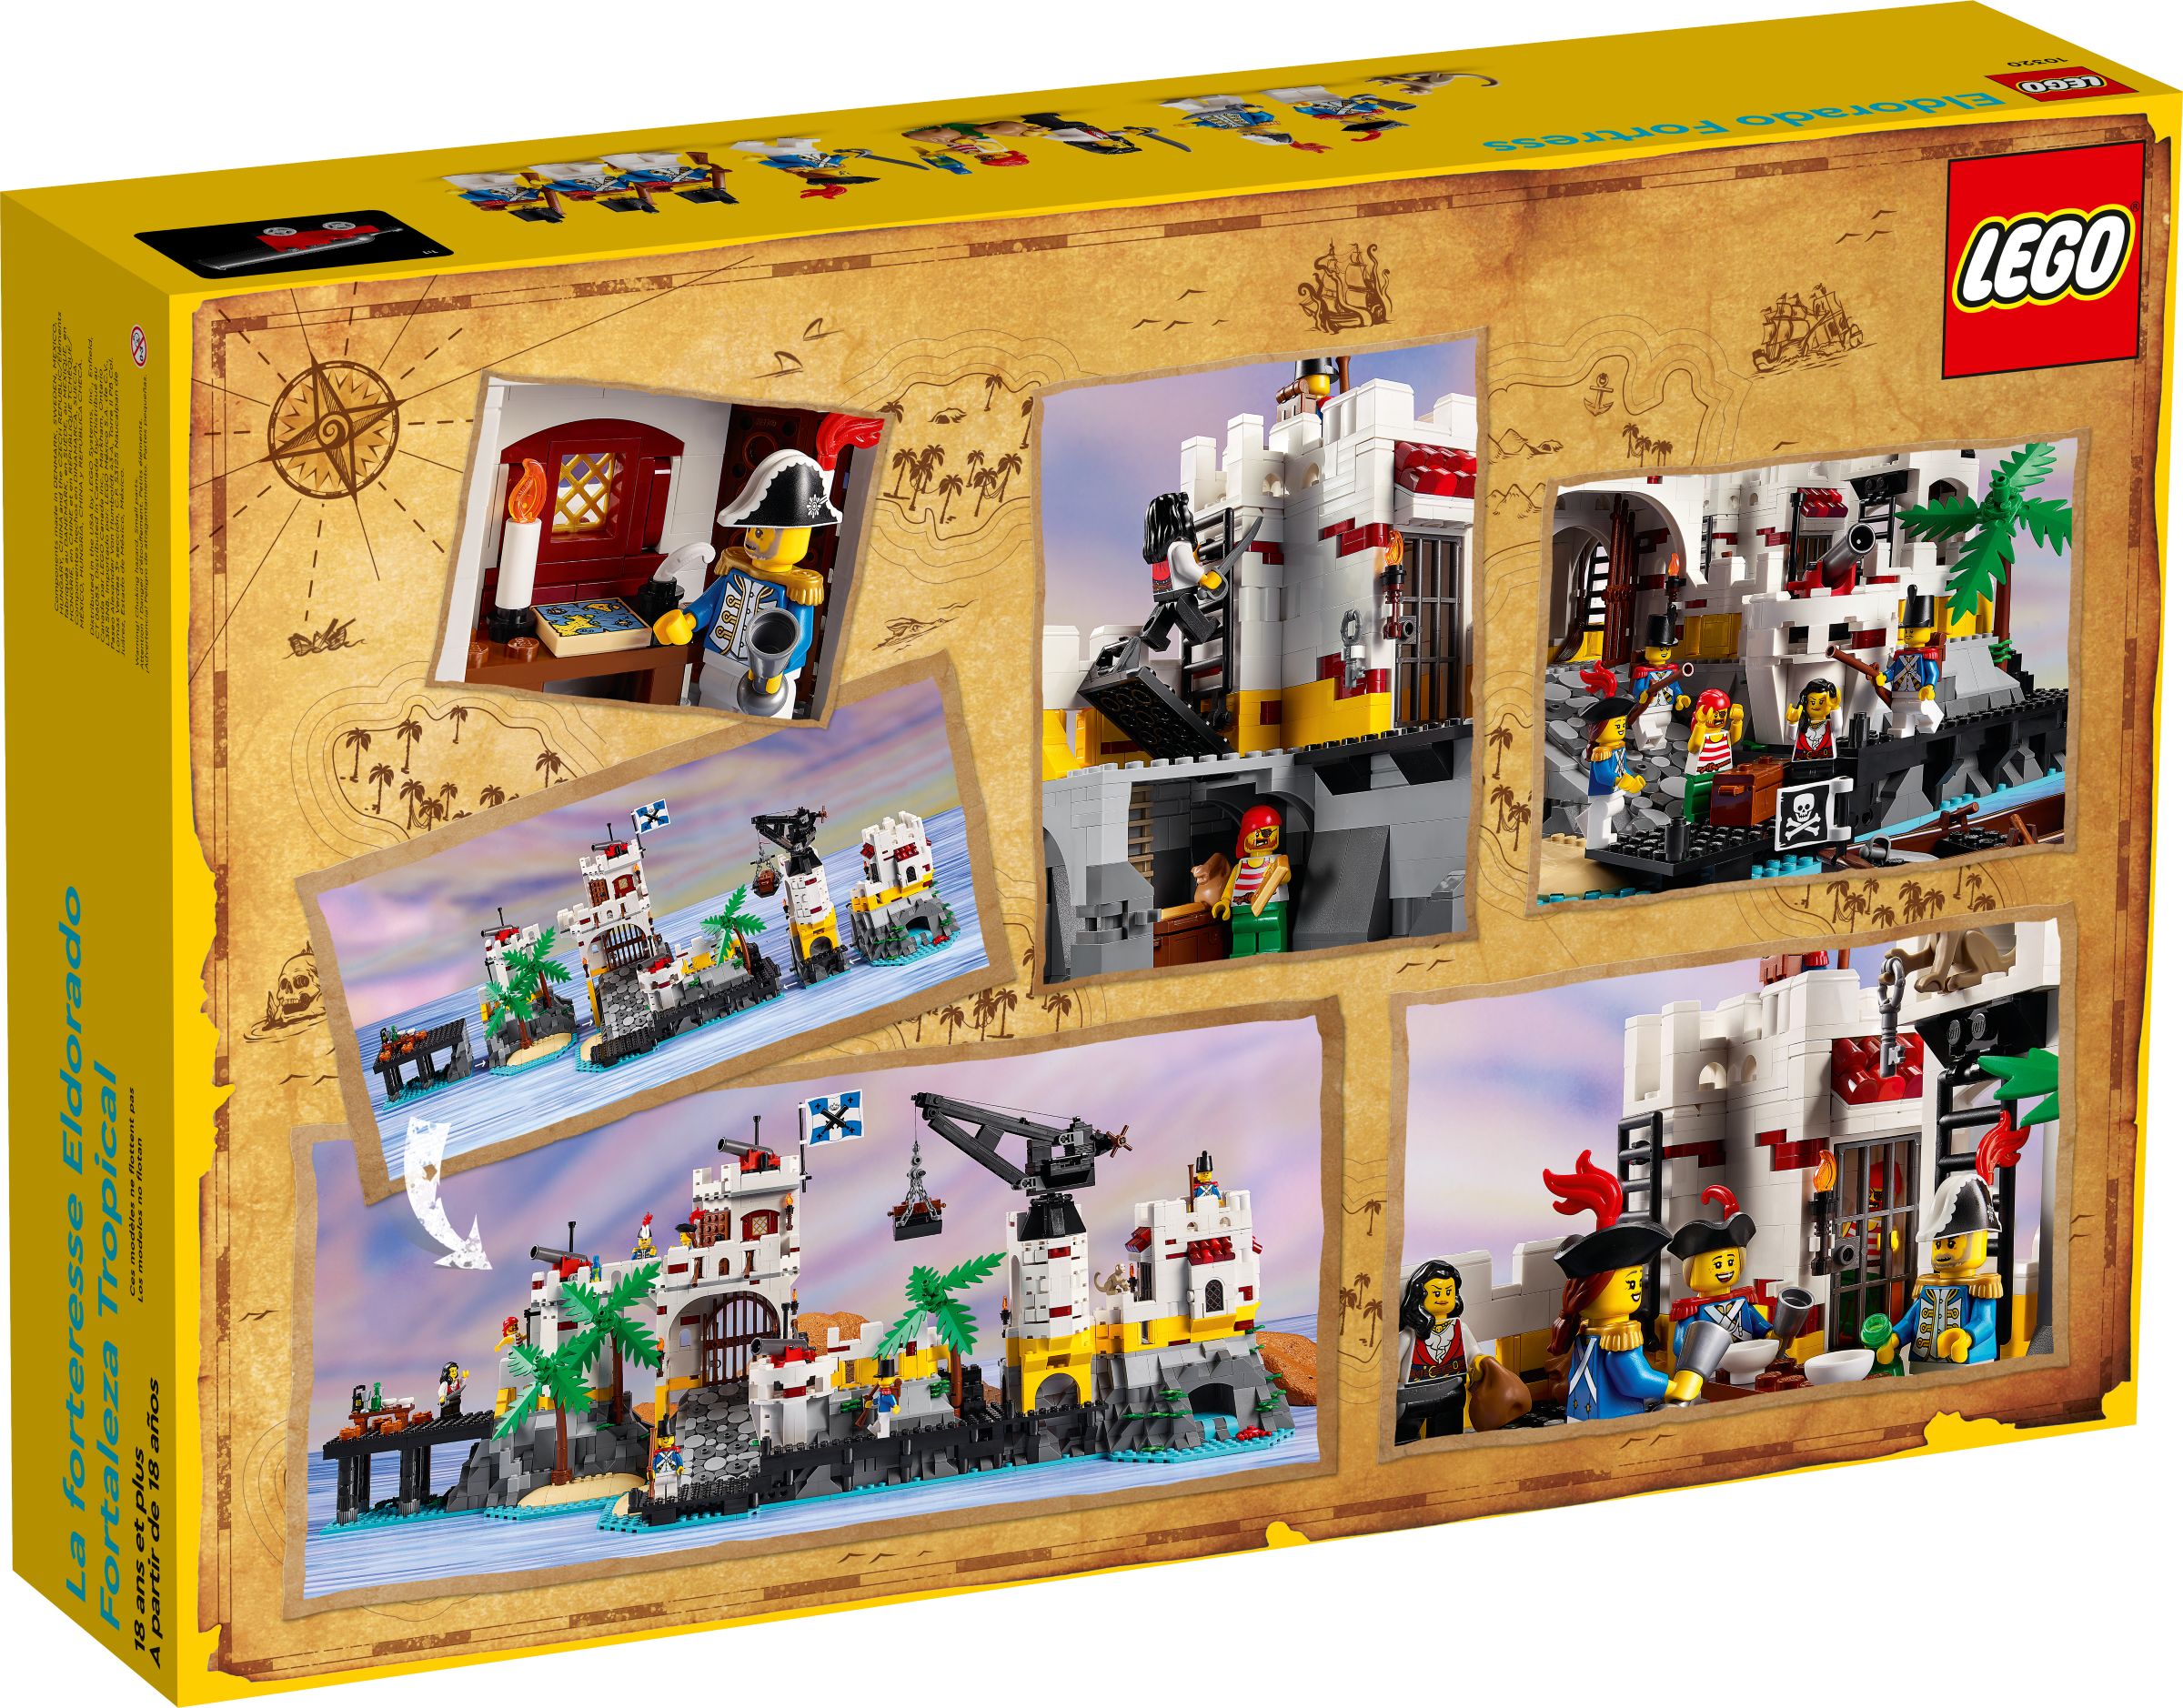 LEGO Advanced Models 10320 Eldorado-Festung LEGO_10320_alt6.jpg